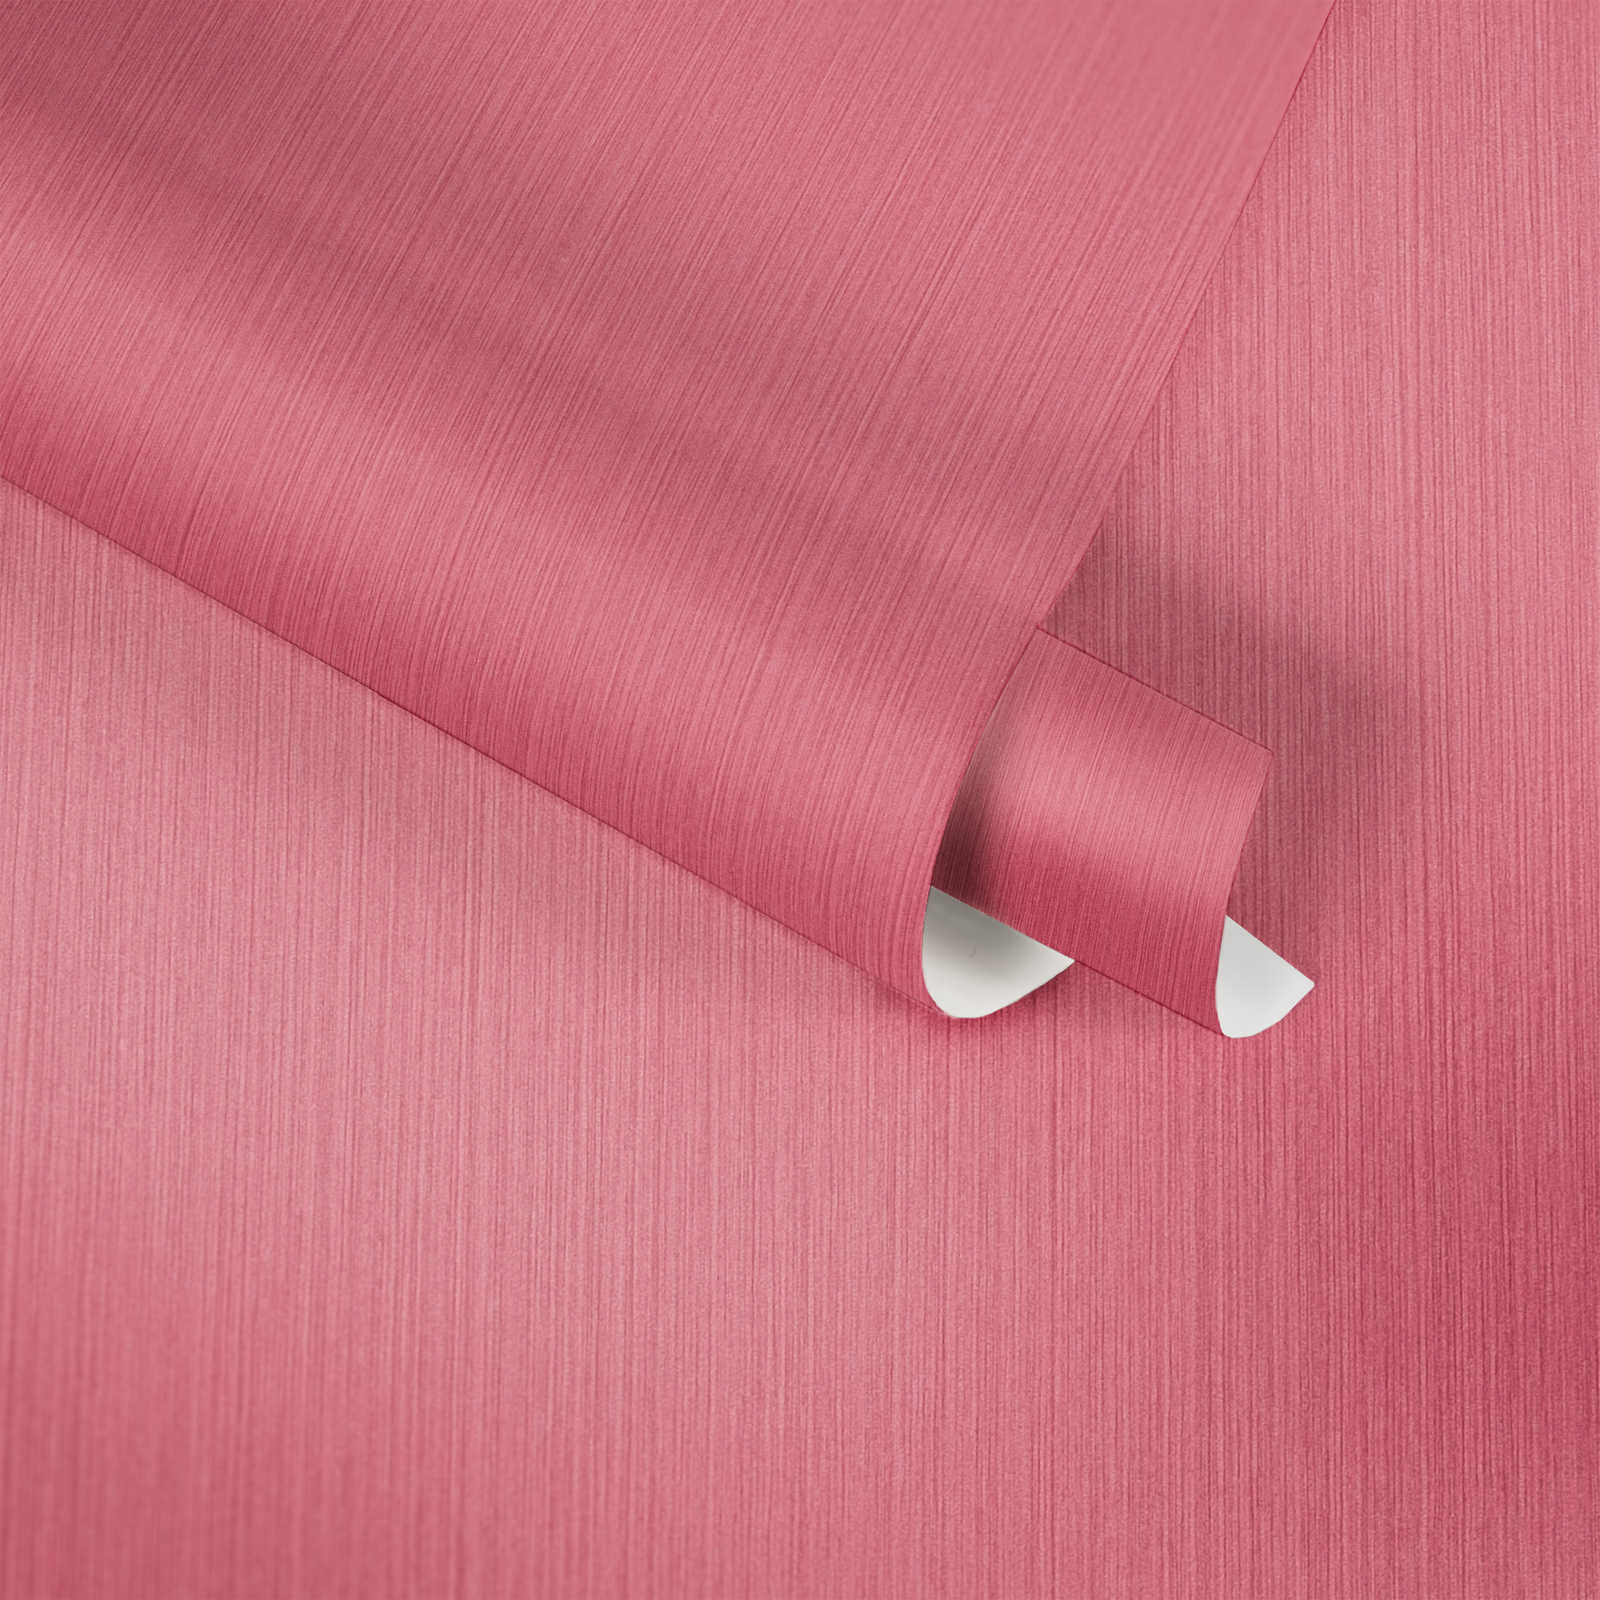             Carta da parati rosa con effetto tessile screziato di MICHALSKY
        